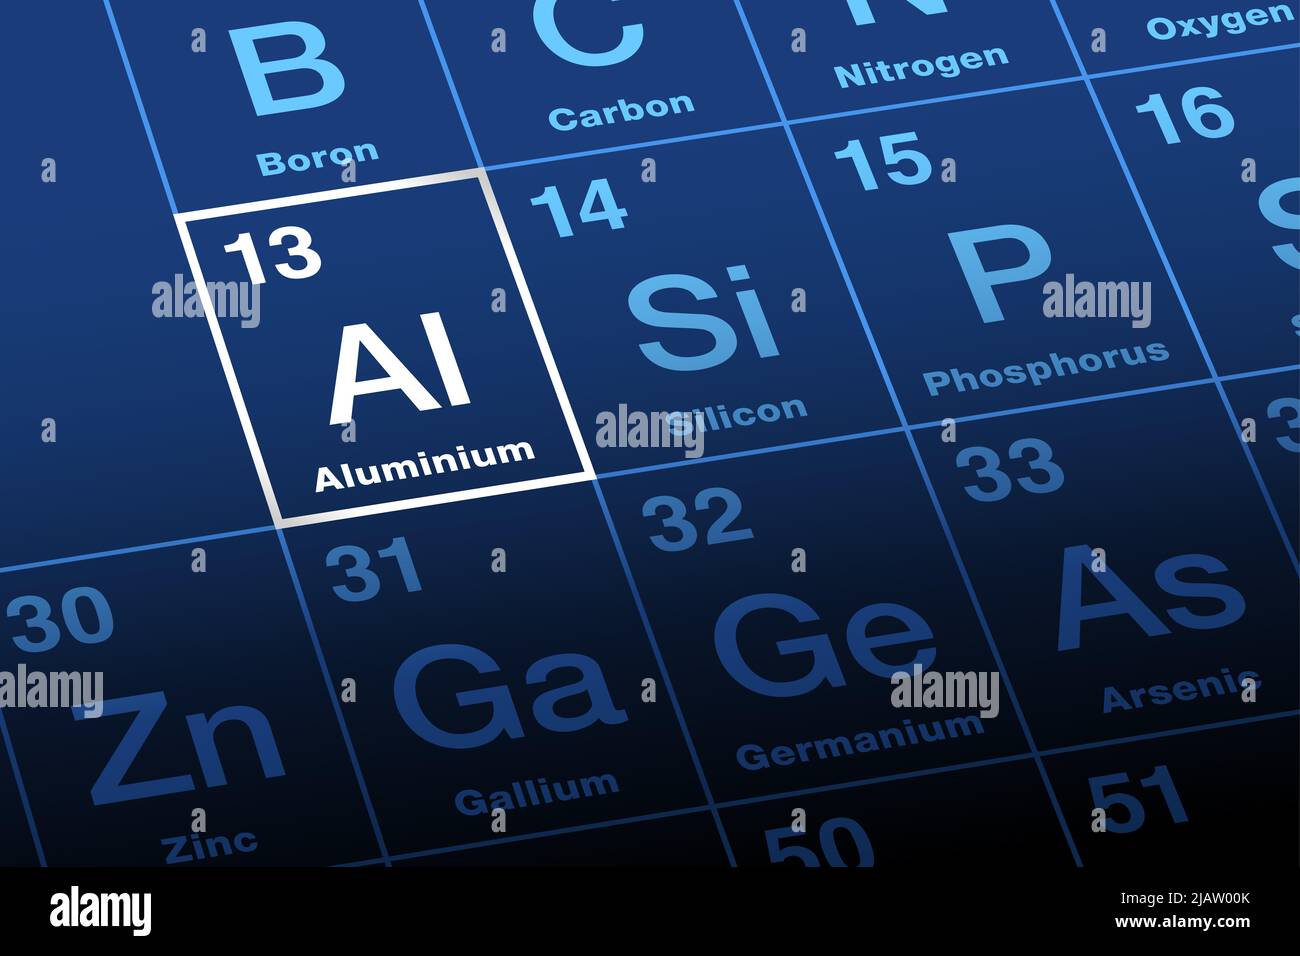 Alluminio, alluminio su tavola periodica degli elementi. Elemento chimico e metallo con simbolo al e numero atomico 13. Foto Stock